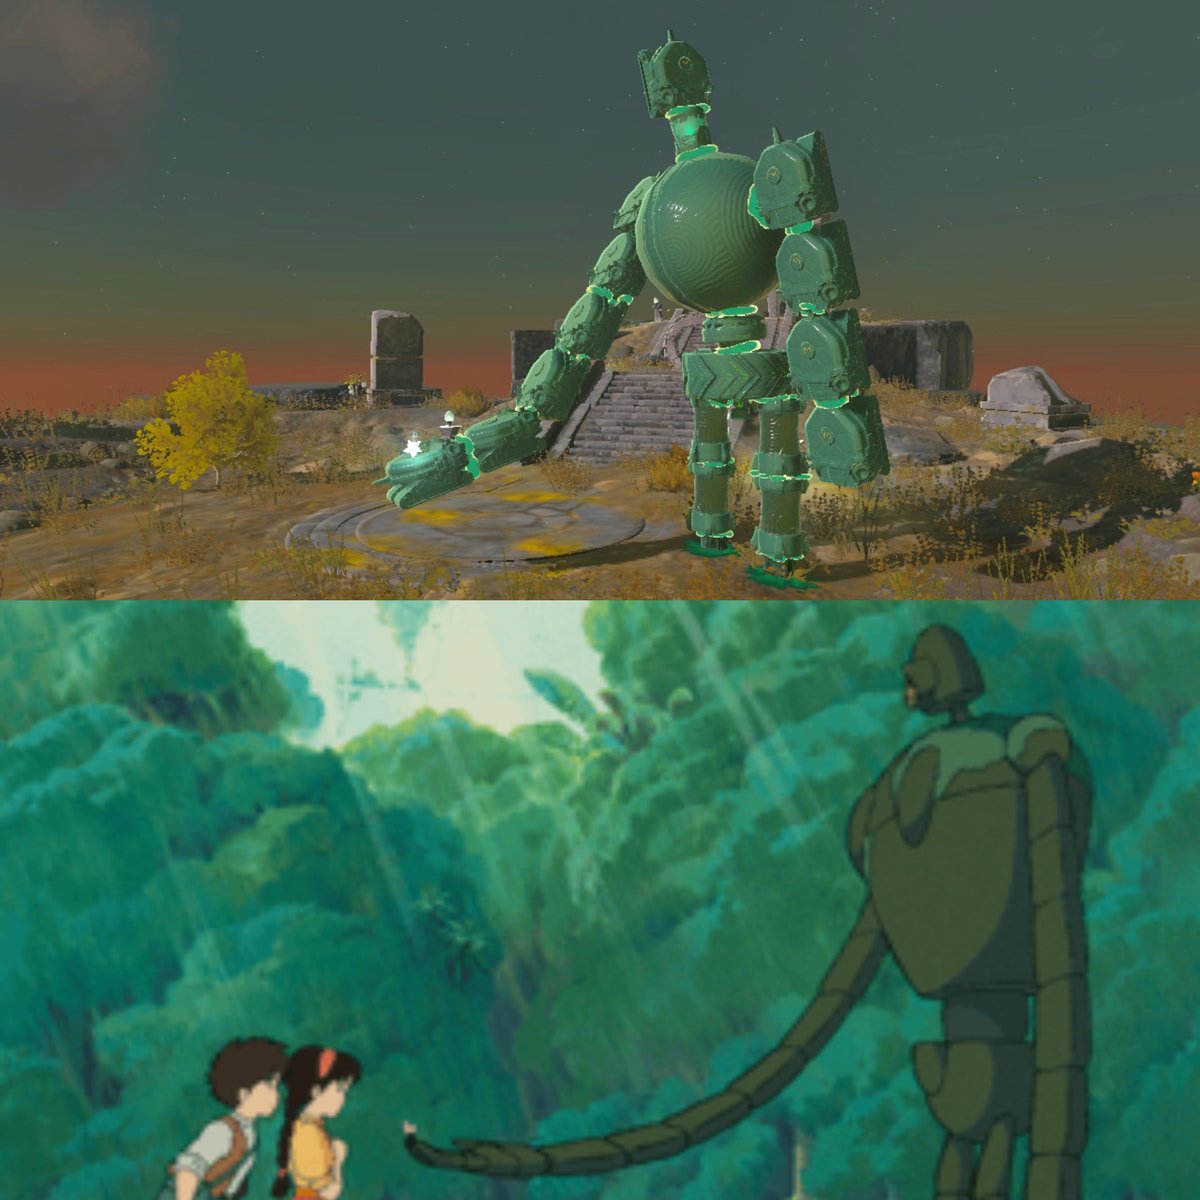 ラピュタのロボット兵
#ゼルダの伝説 #TearsOfTheKingdom #Zelda #NintendoSwitch